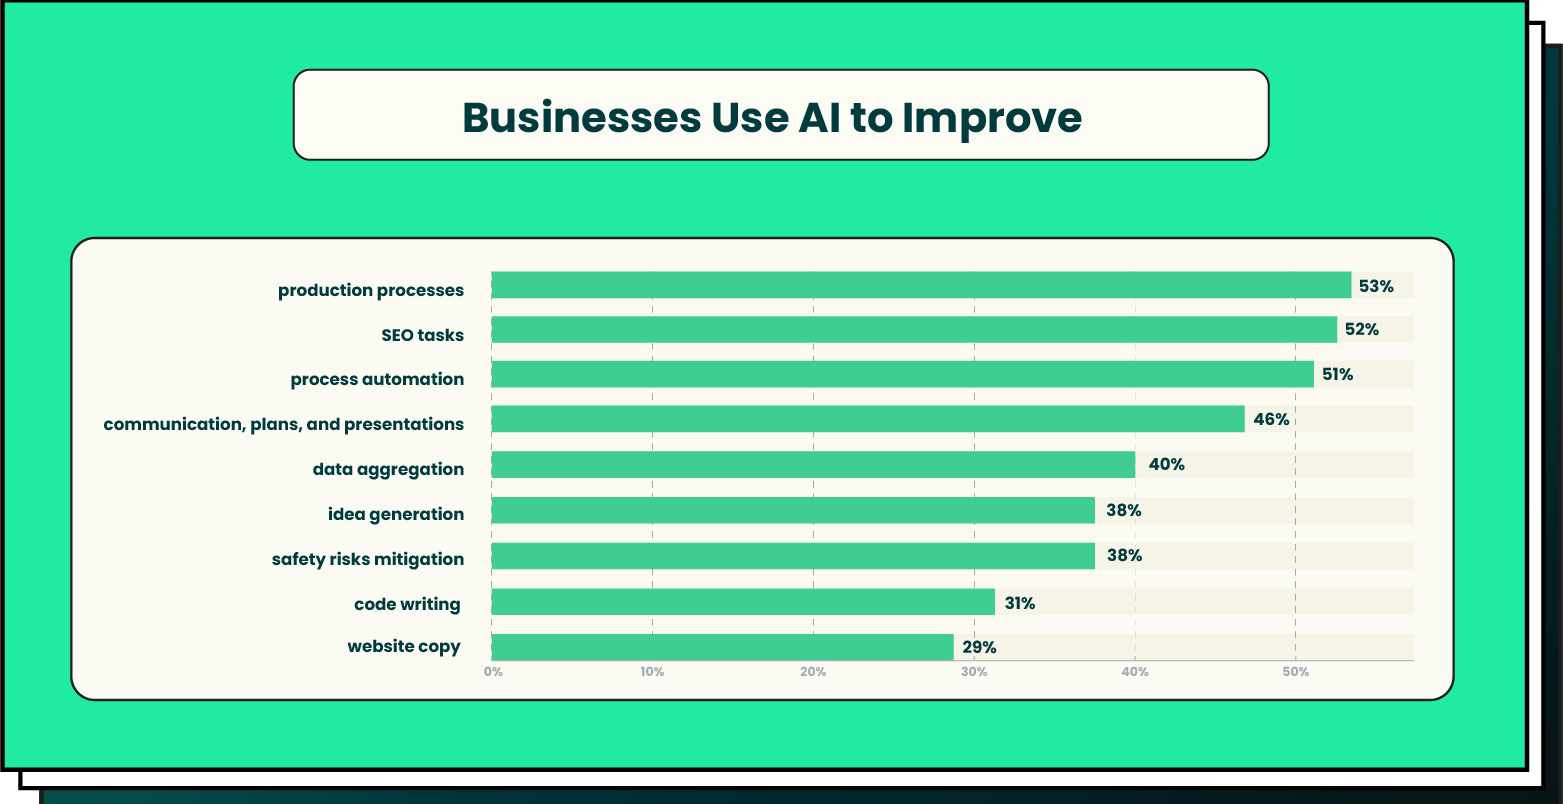 Businesses use AI to improve